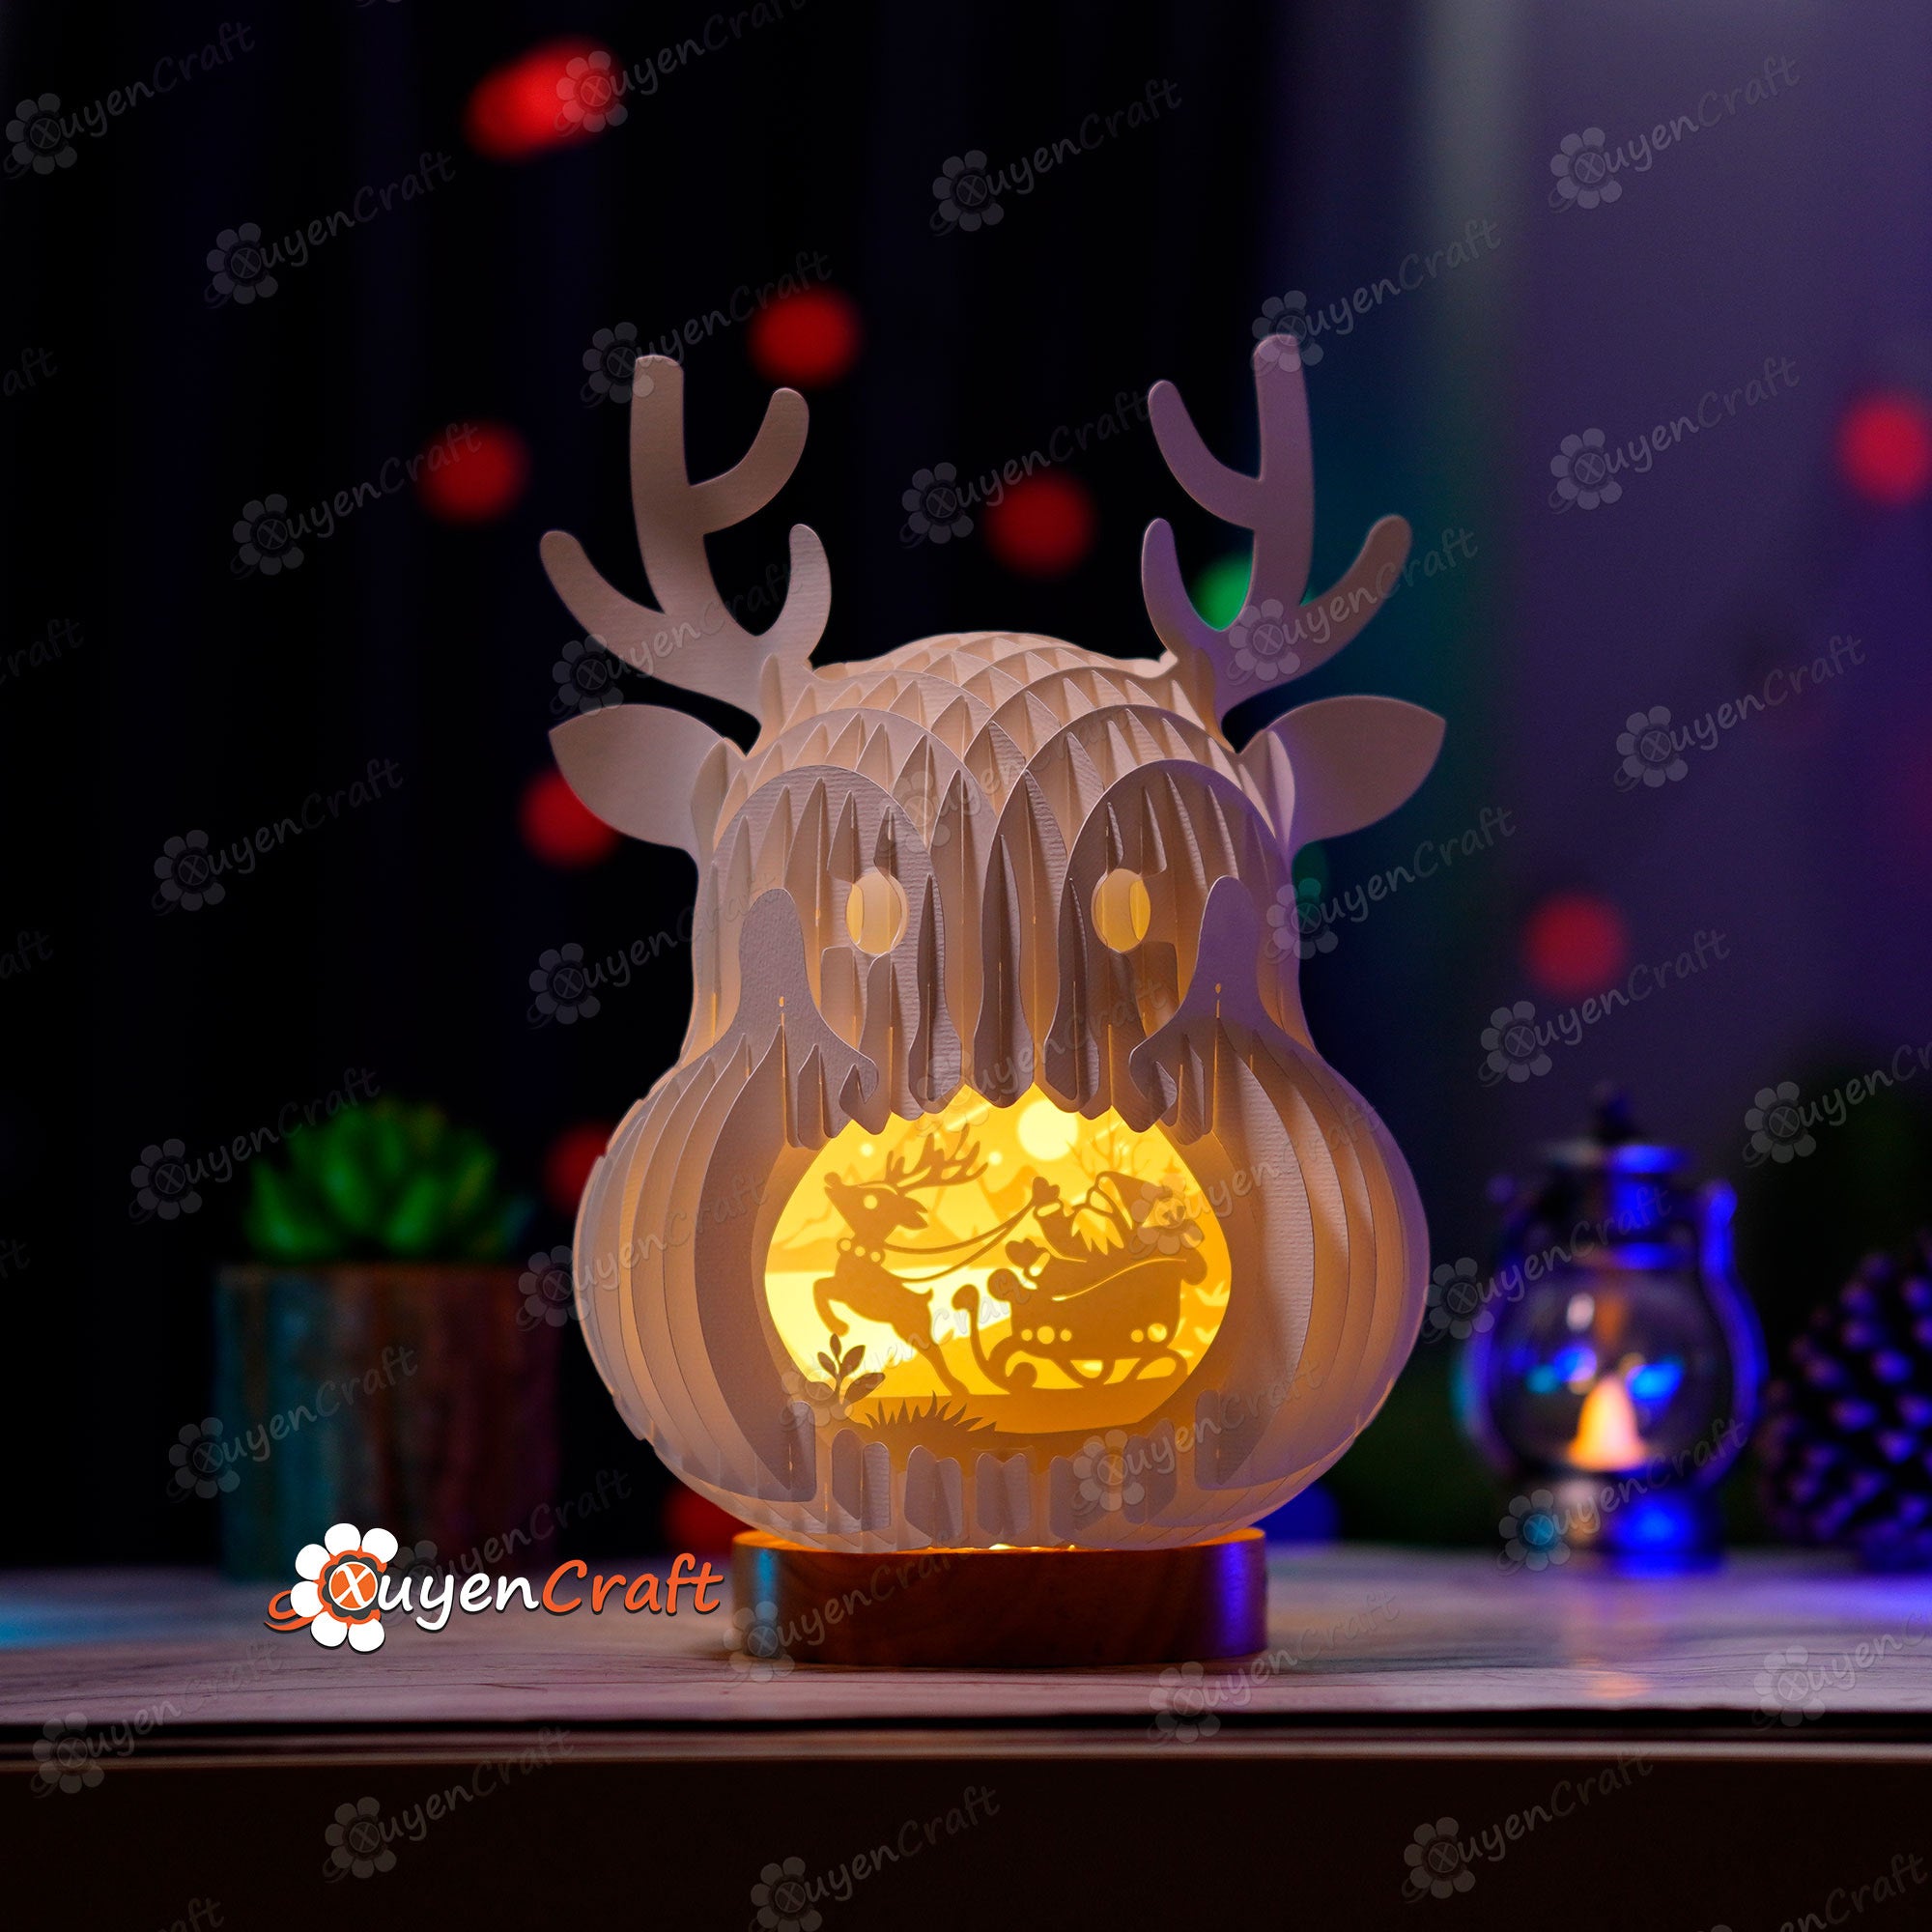 Pack 3 Reindeer Pop Up SVG Template creating Deer, Santa Claus in Reindeer Slice Form Popup for Merry Christmas